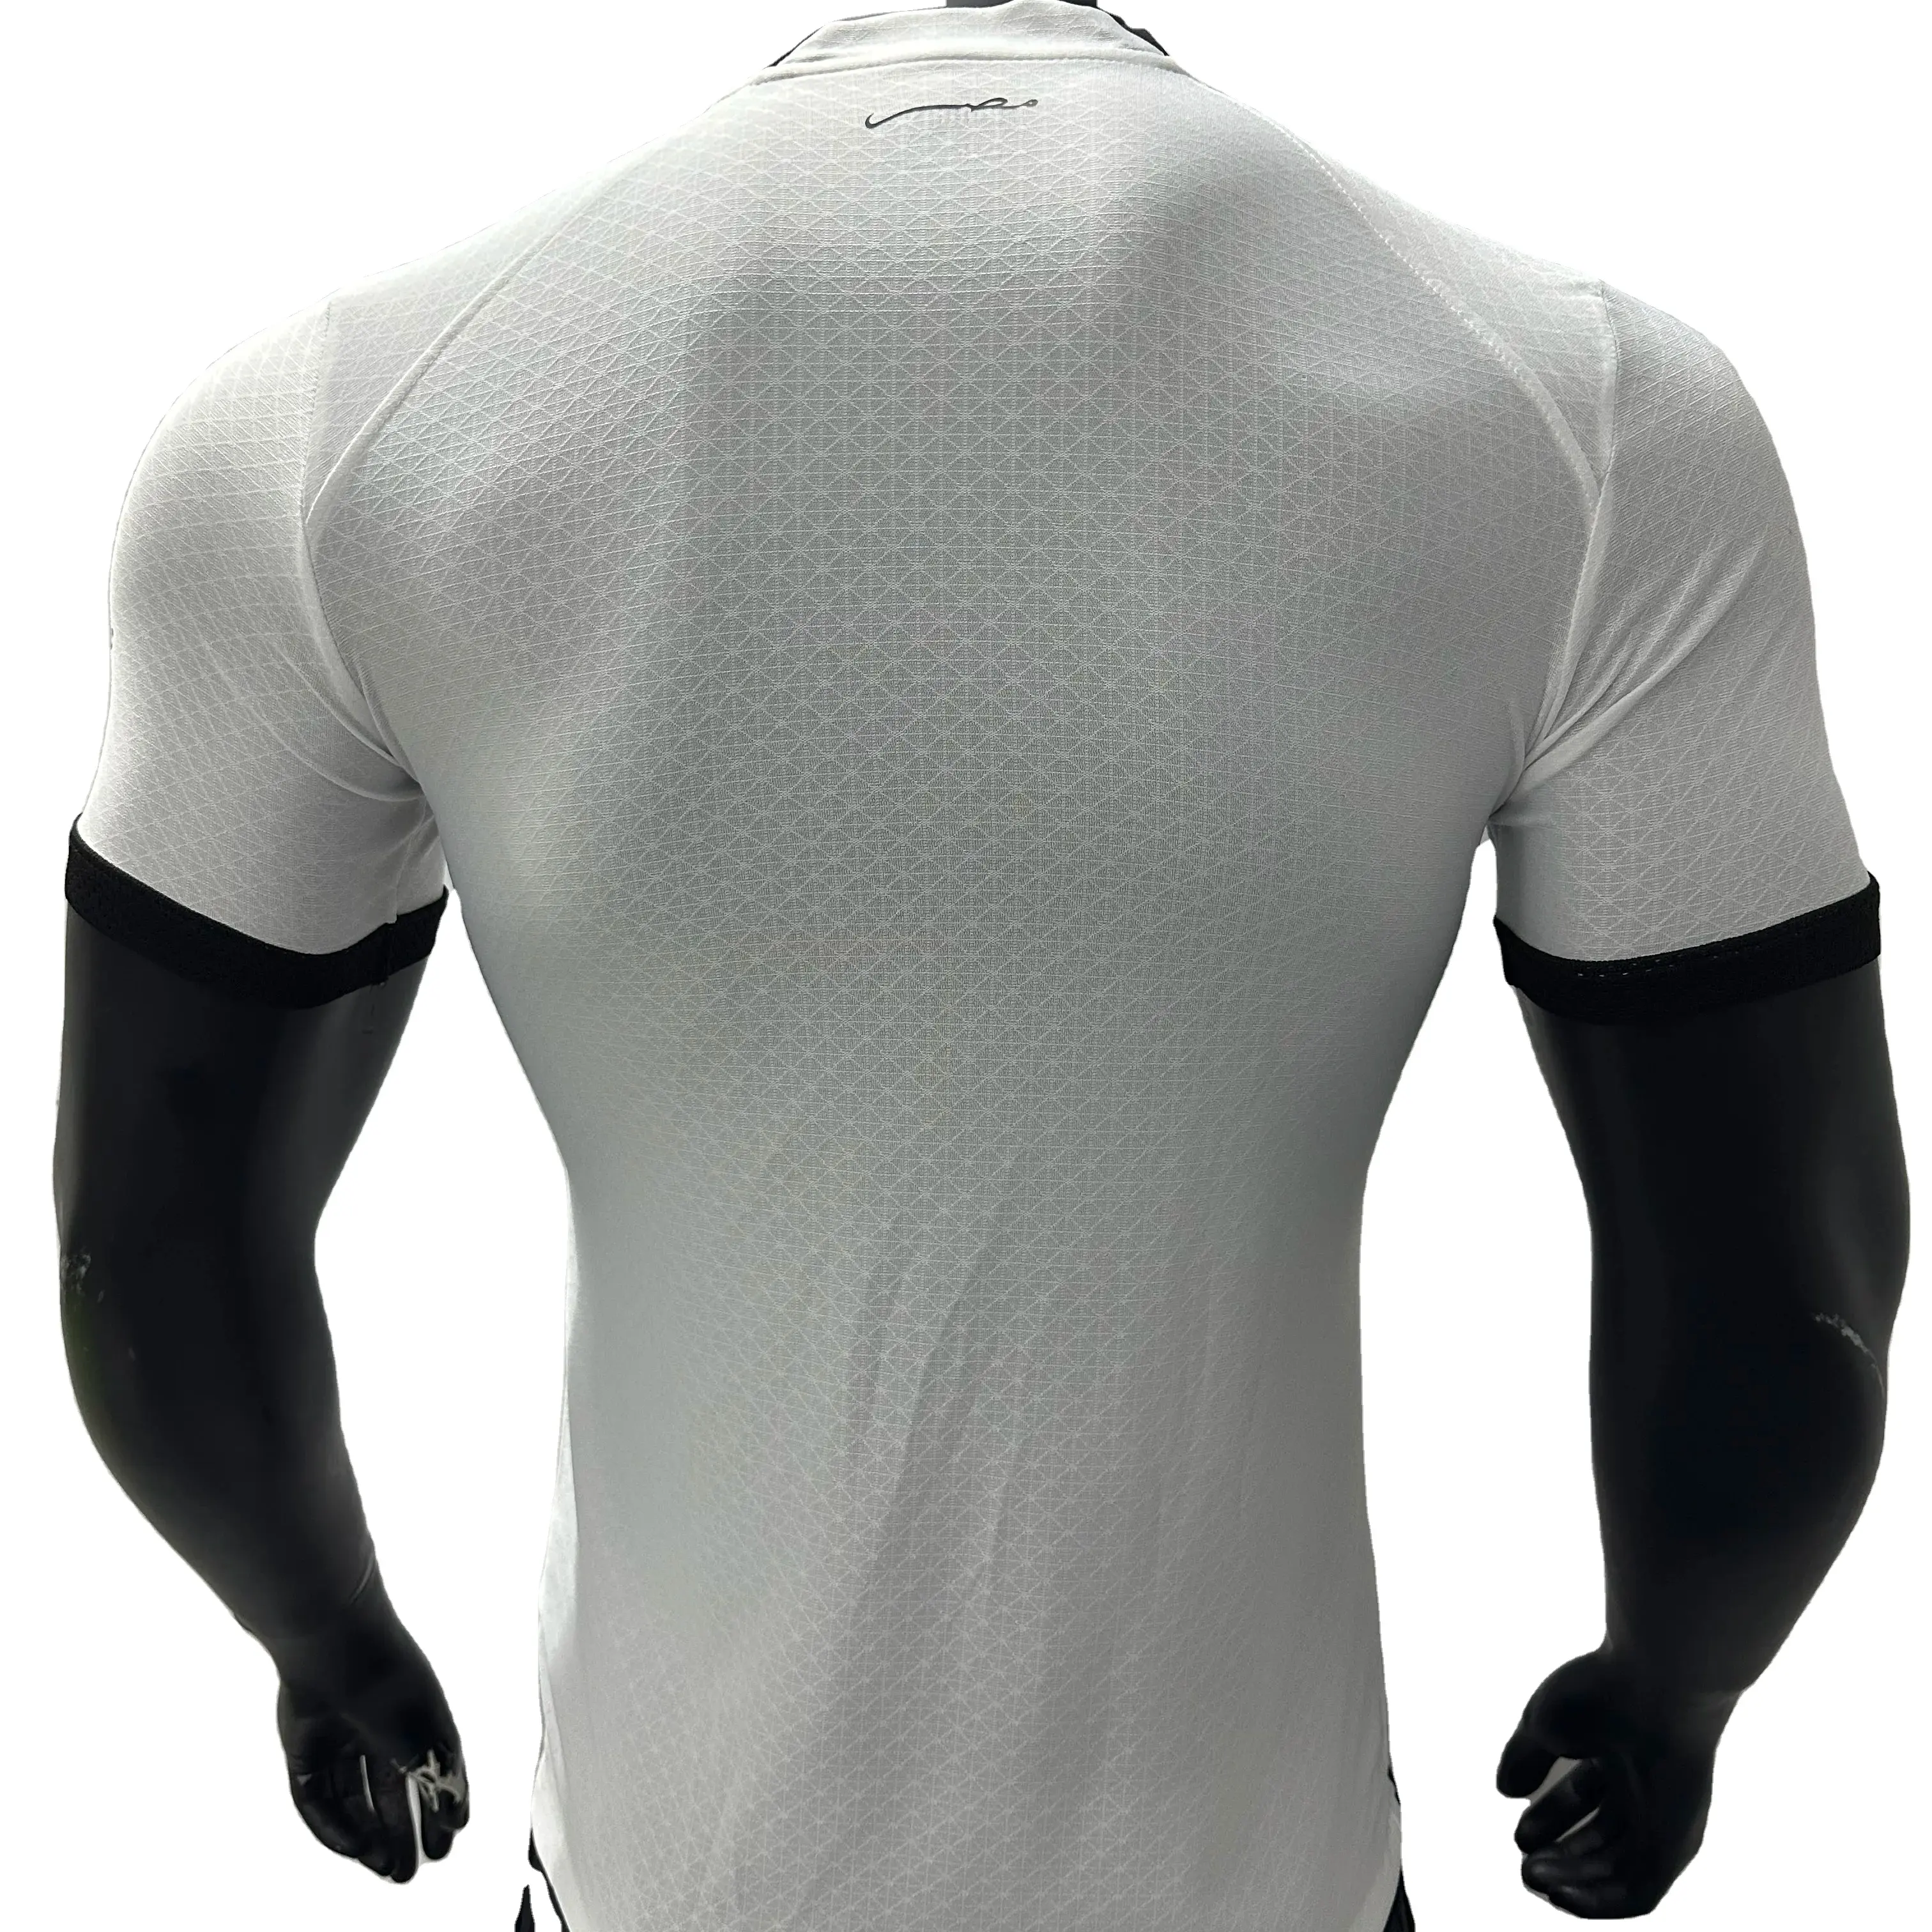 เสื้อเจอร์ซีย์ฟุตบอลชาย, เสื้อเจอร์ซีย์ฟุตบอลอียิปต์22-23